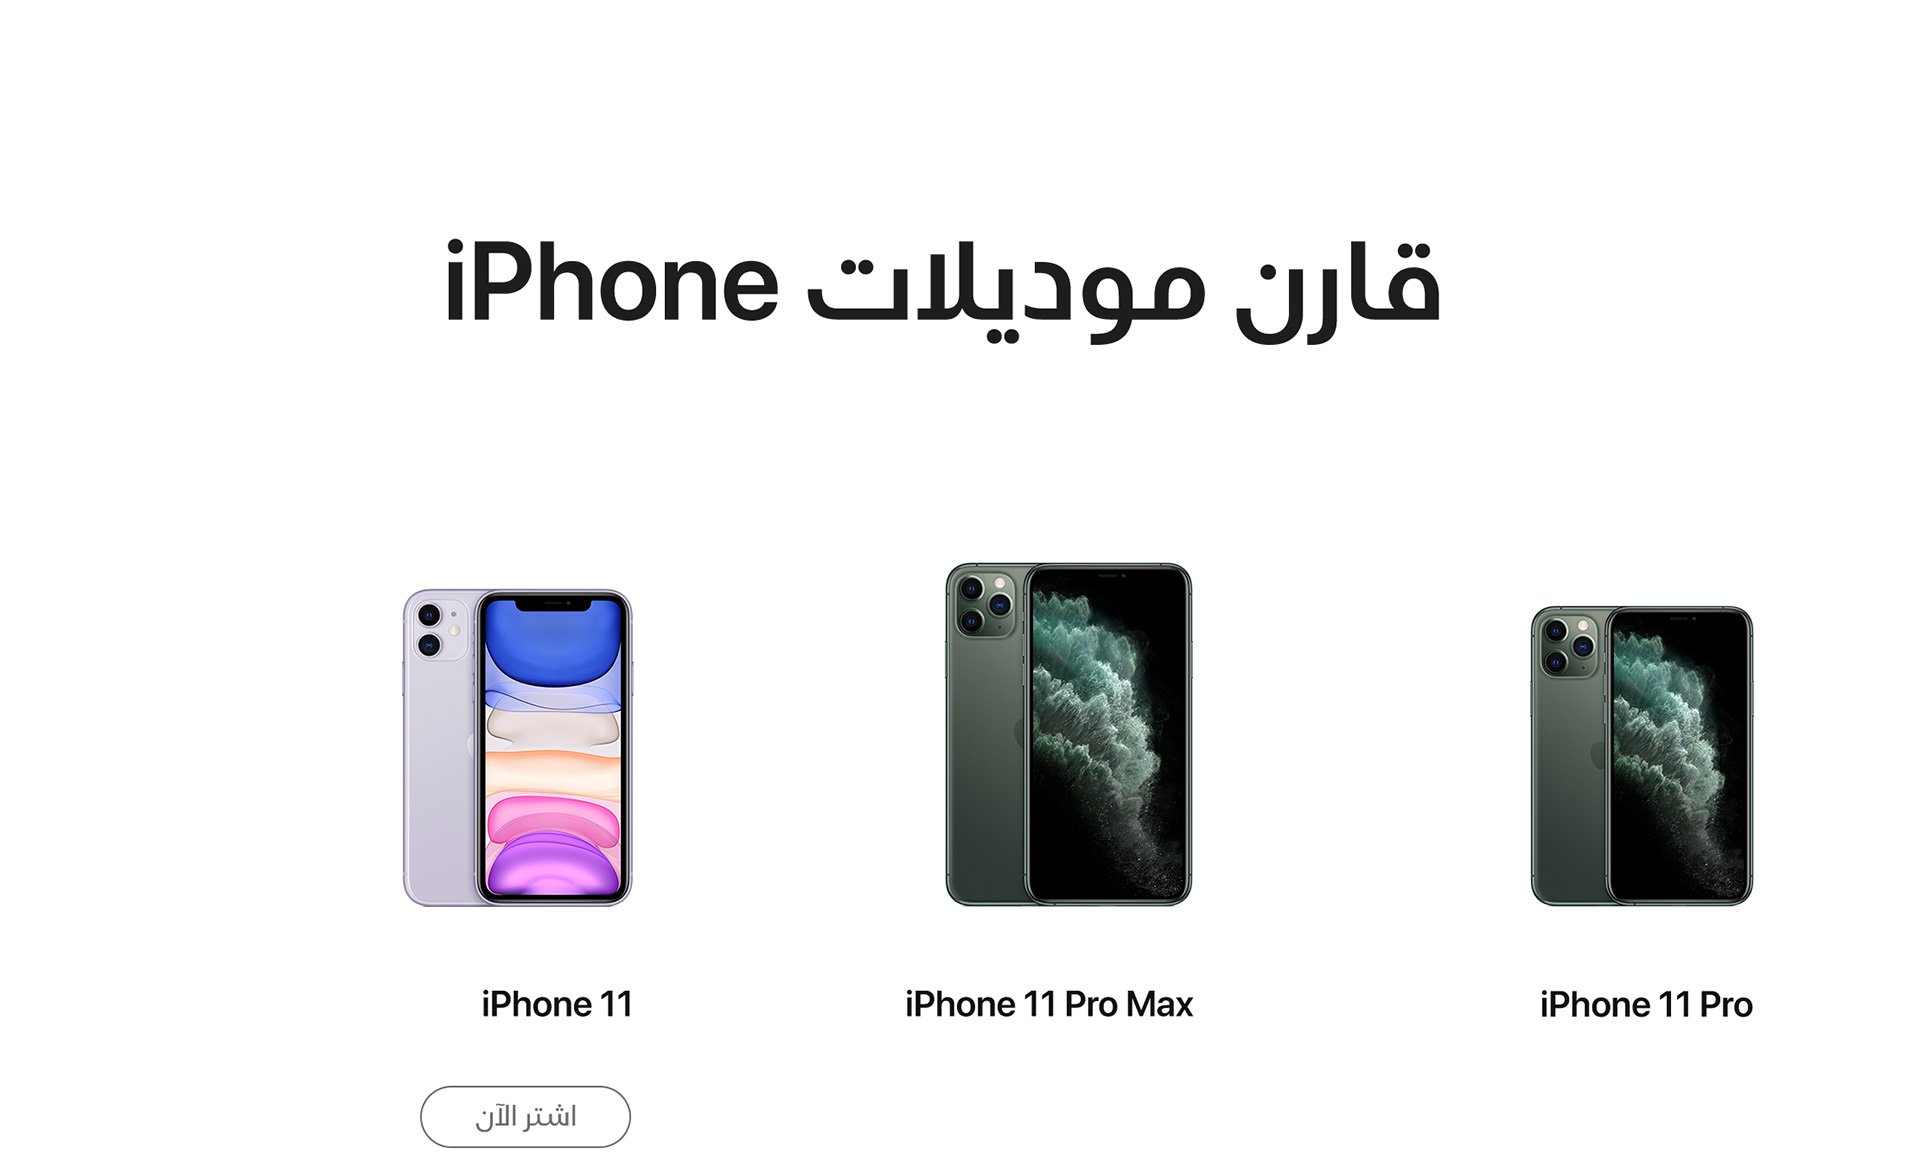 apple-iphone11-price-uae-etisalat-comparison-ar-1